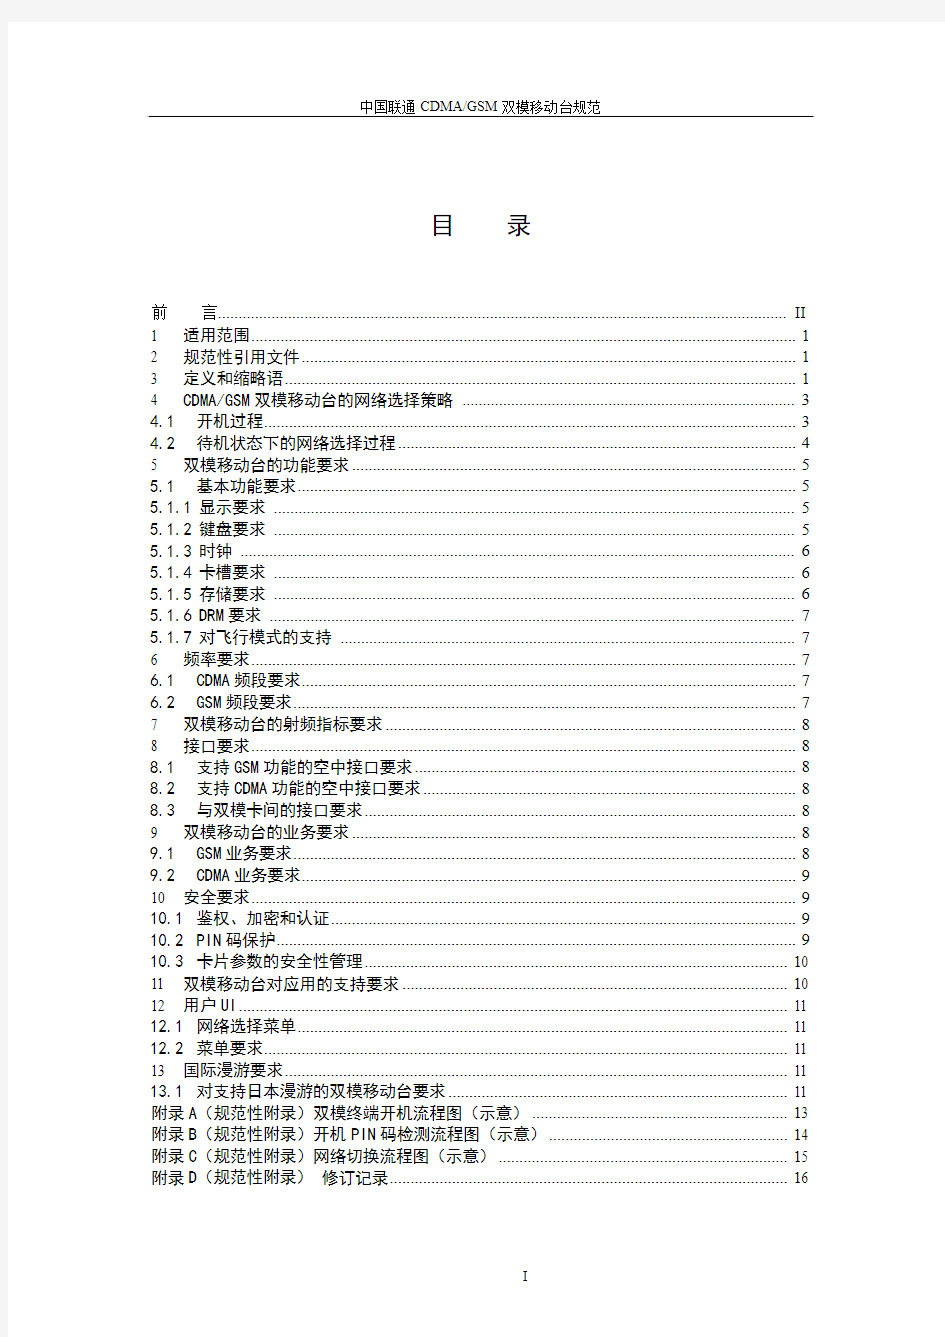 中国联通GSMCDMA双模移动台技术规范(V3.0)_20060214